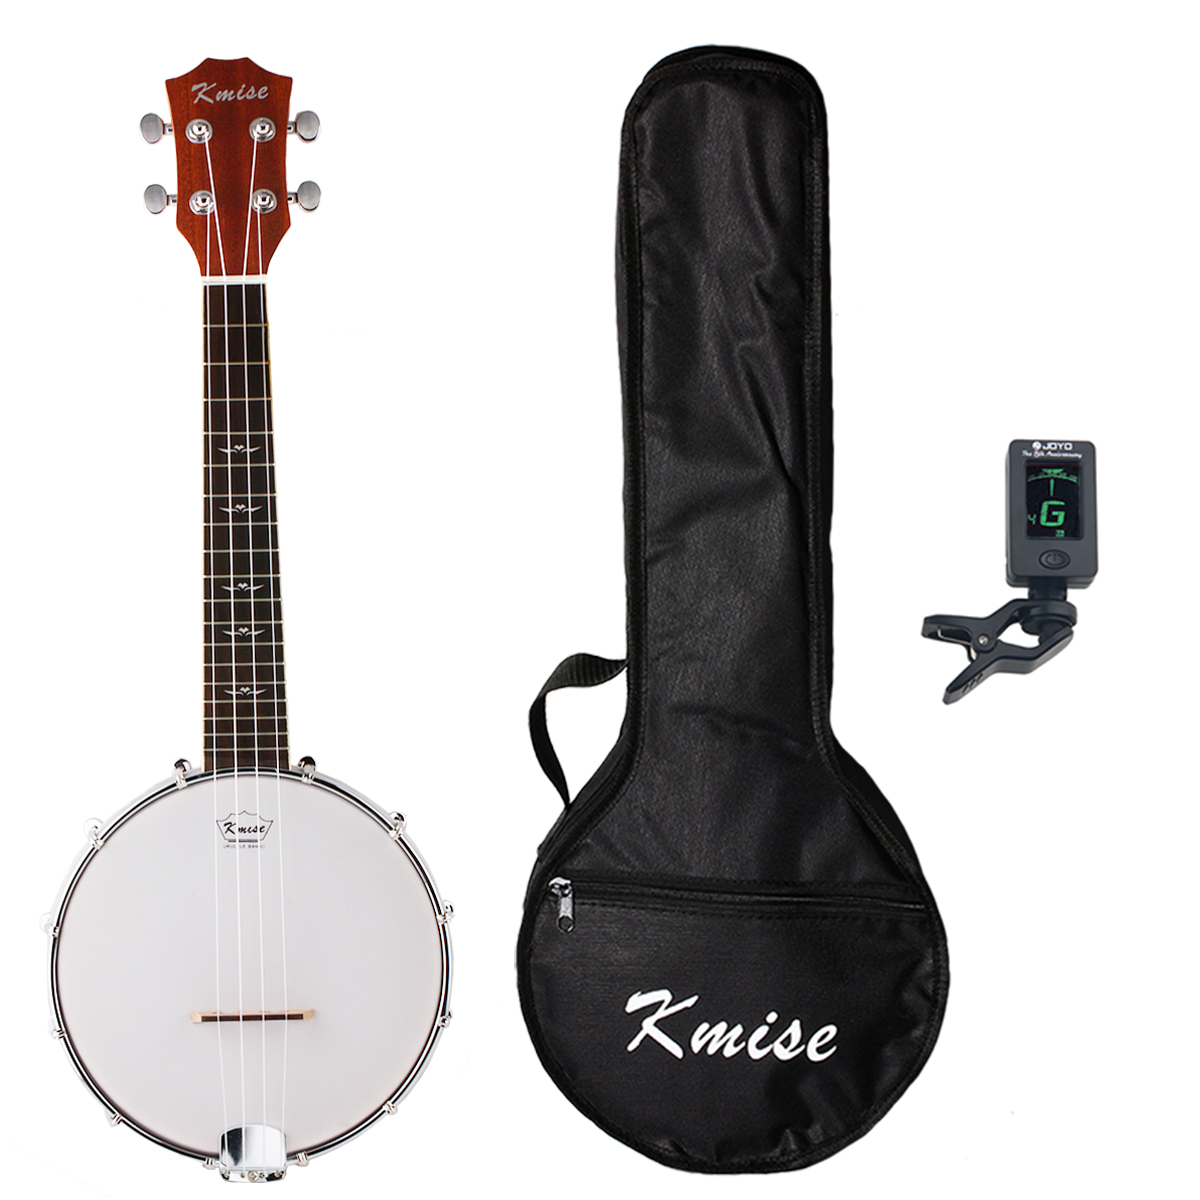 Kmise 4 String Banjo Ukulele Uke Banjolele Concert 23 Inch Size Sapele with Bag Tuner